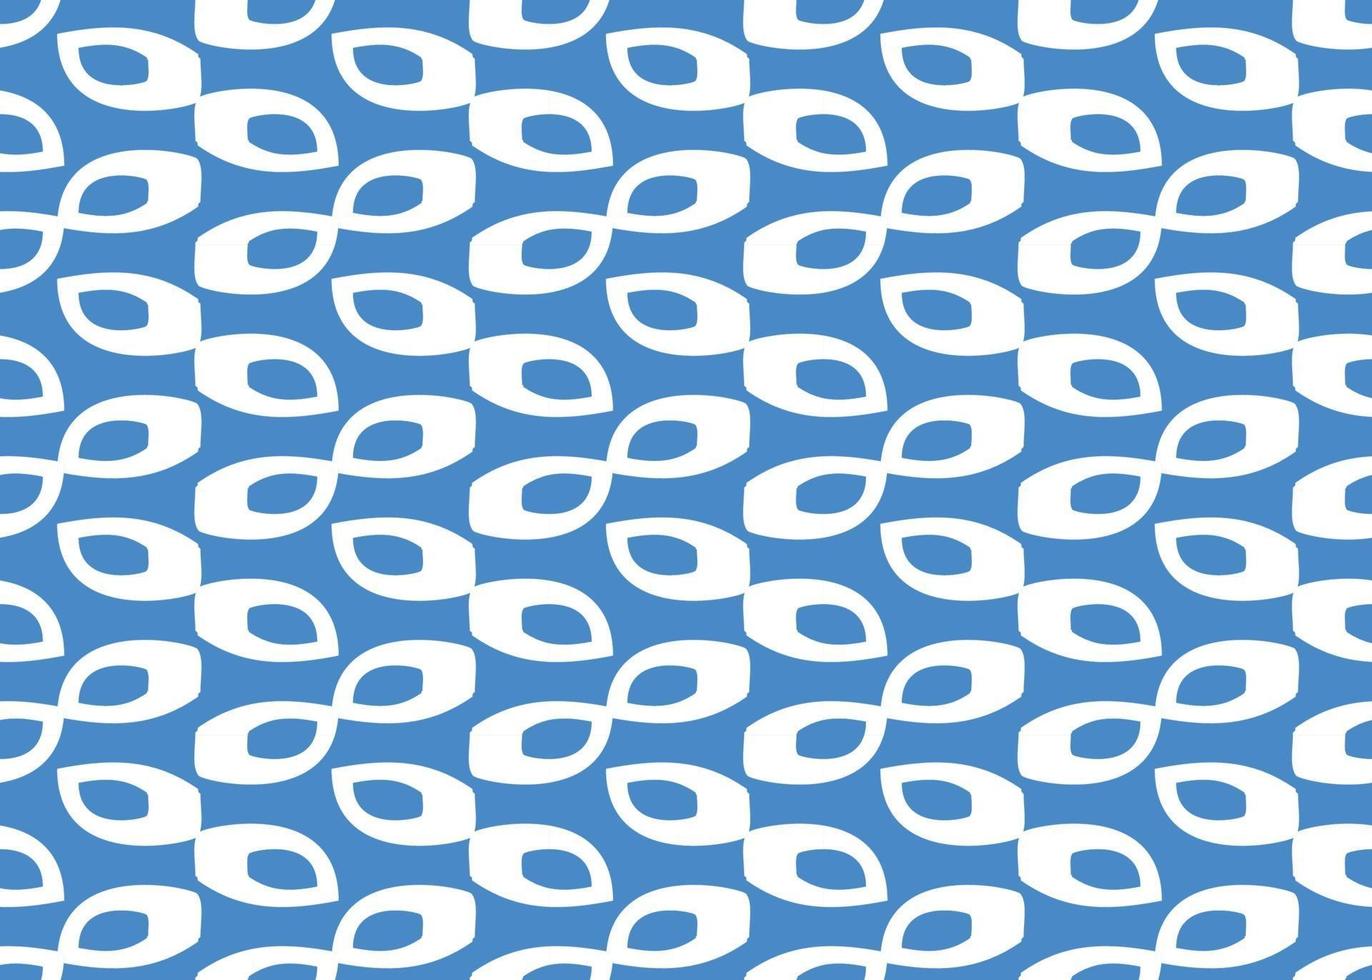 Vektor Textur Hintergrund, nahtloses Muster. handgezeichnete, blaue, weiße Farben.